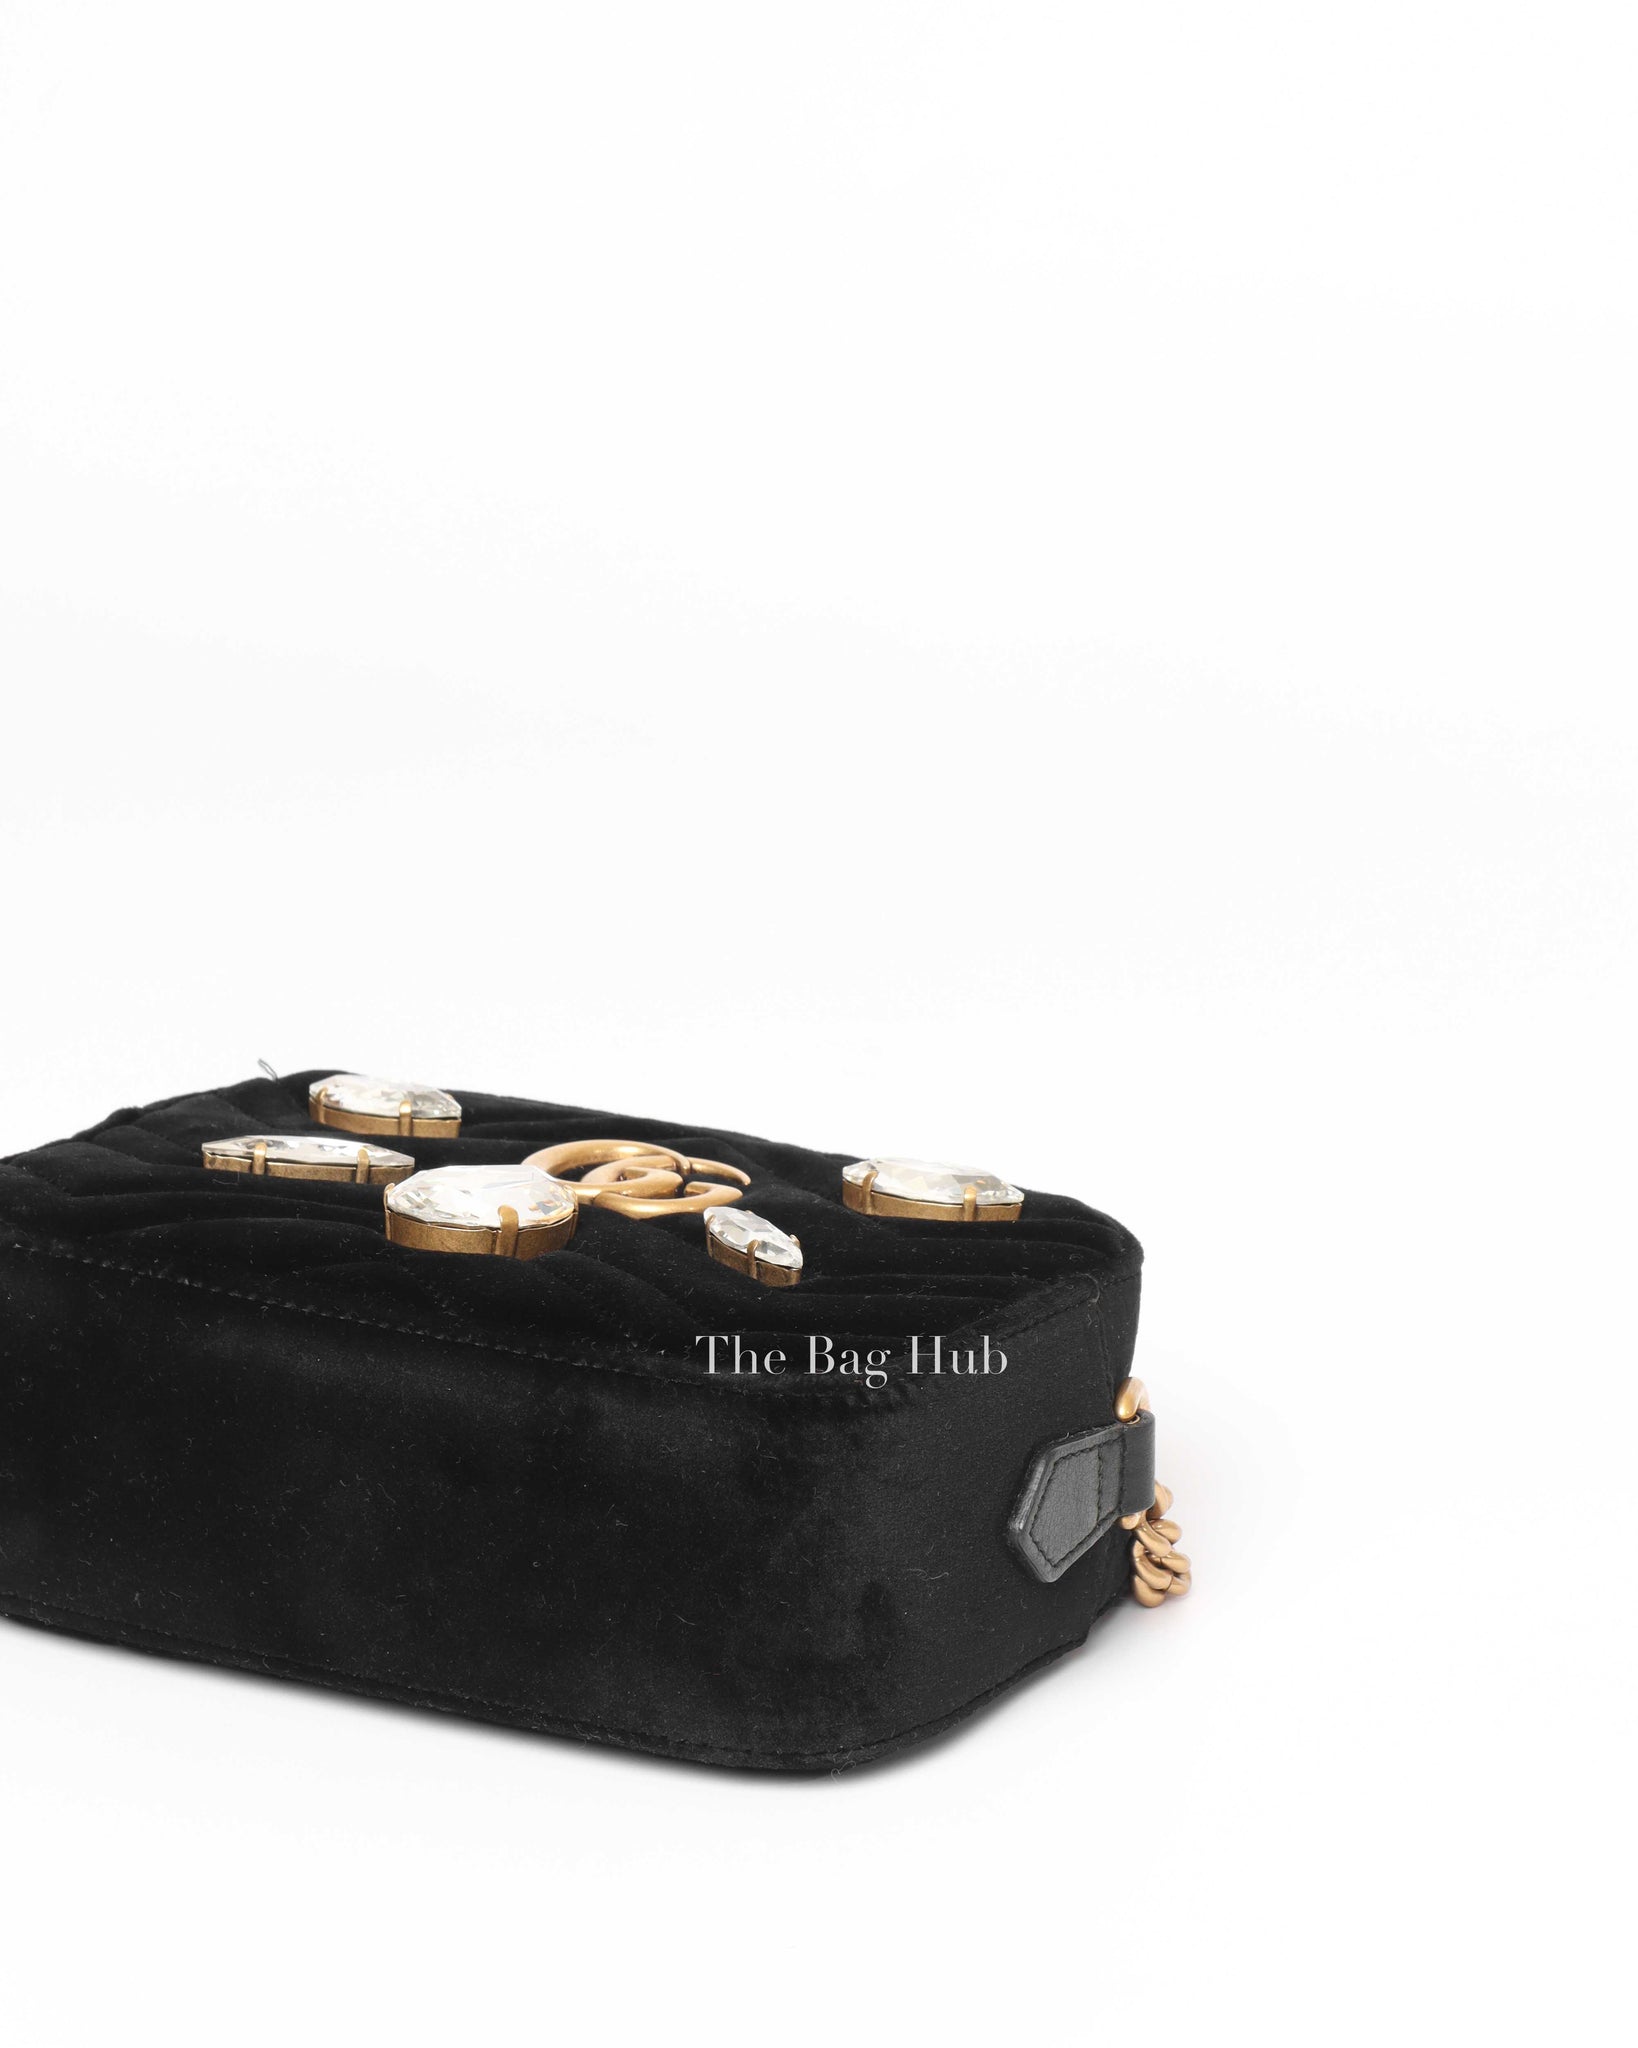 Gucci Black Velvet GG Marmont Rhinestones Embellished Mini Shoulder Bag